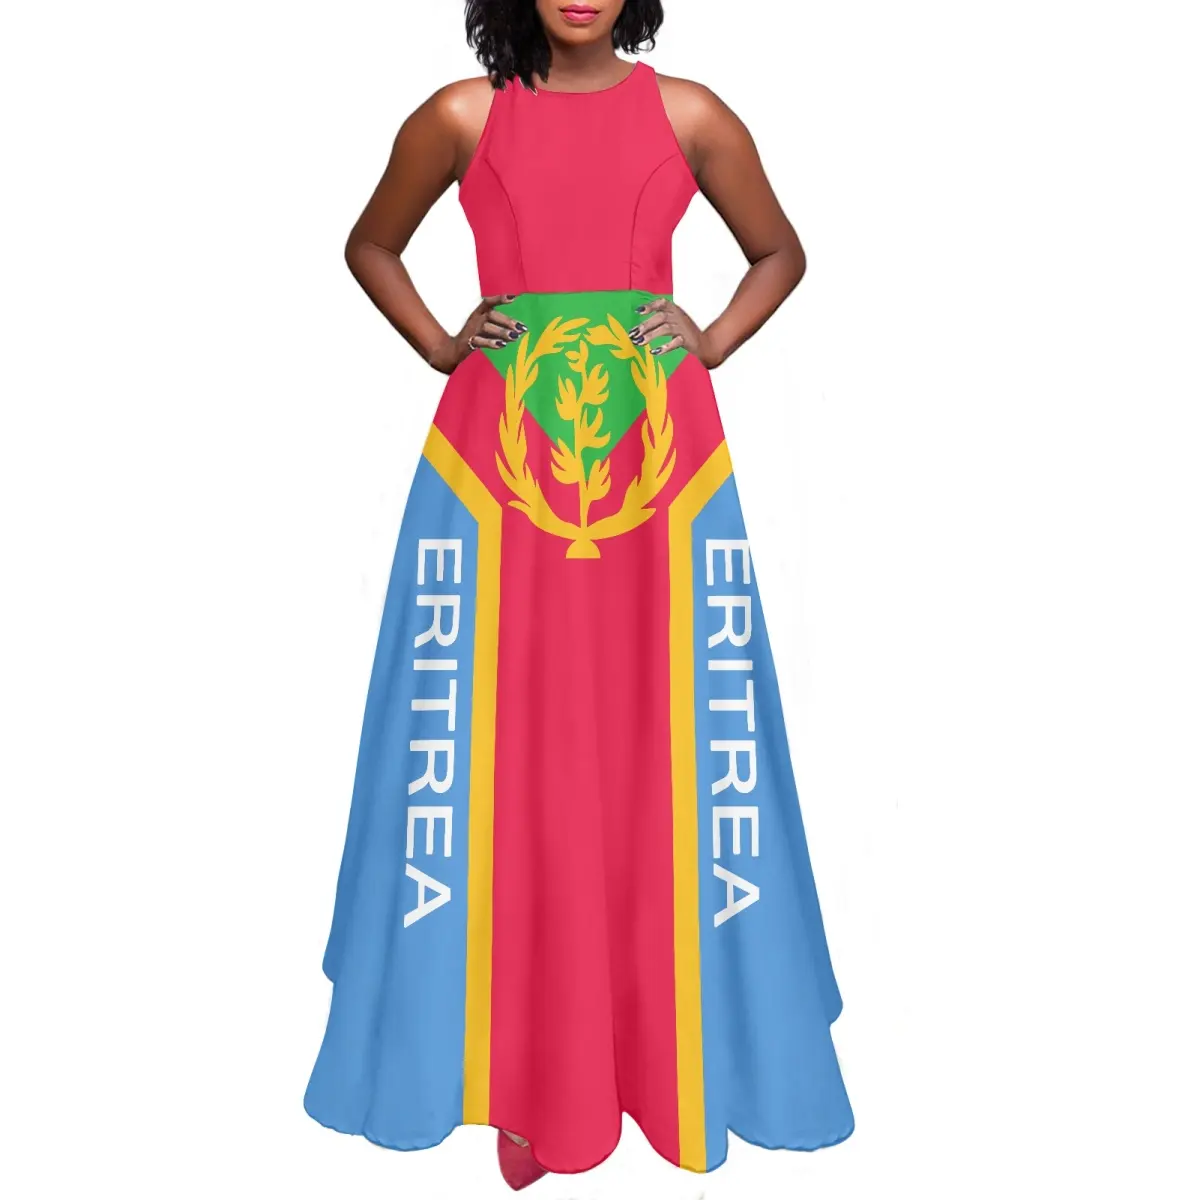 女の子のドレス夏エリトリア伝統的なエレガントなマキシドレス卸売価格エリトリア国旗カスタム女性のドレスセクシーなファッション